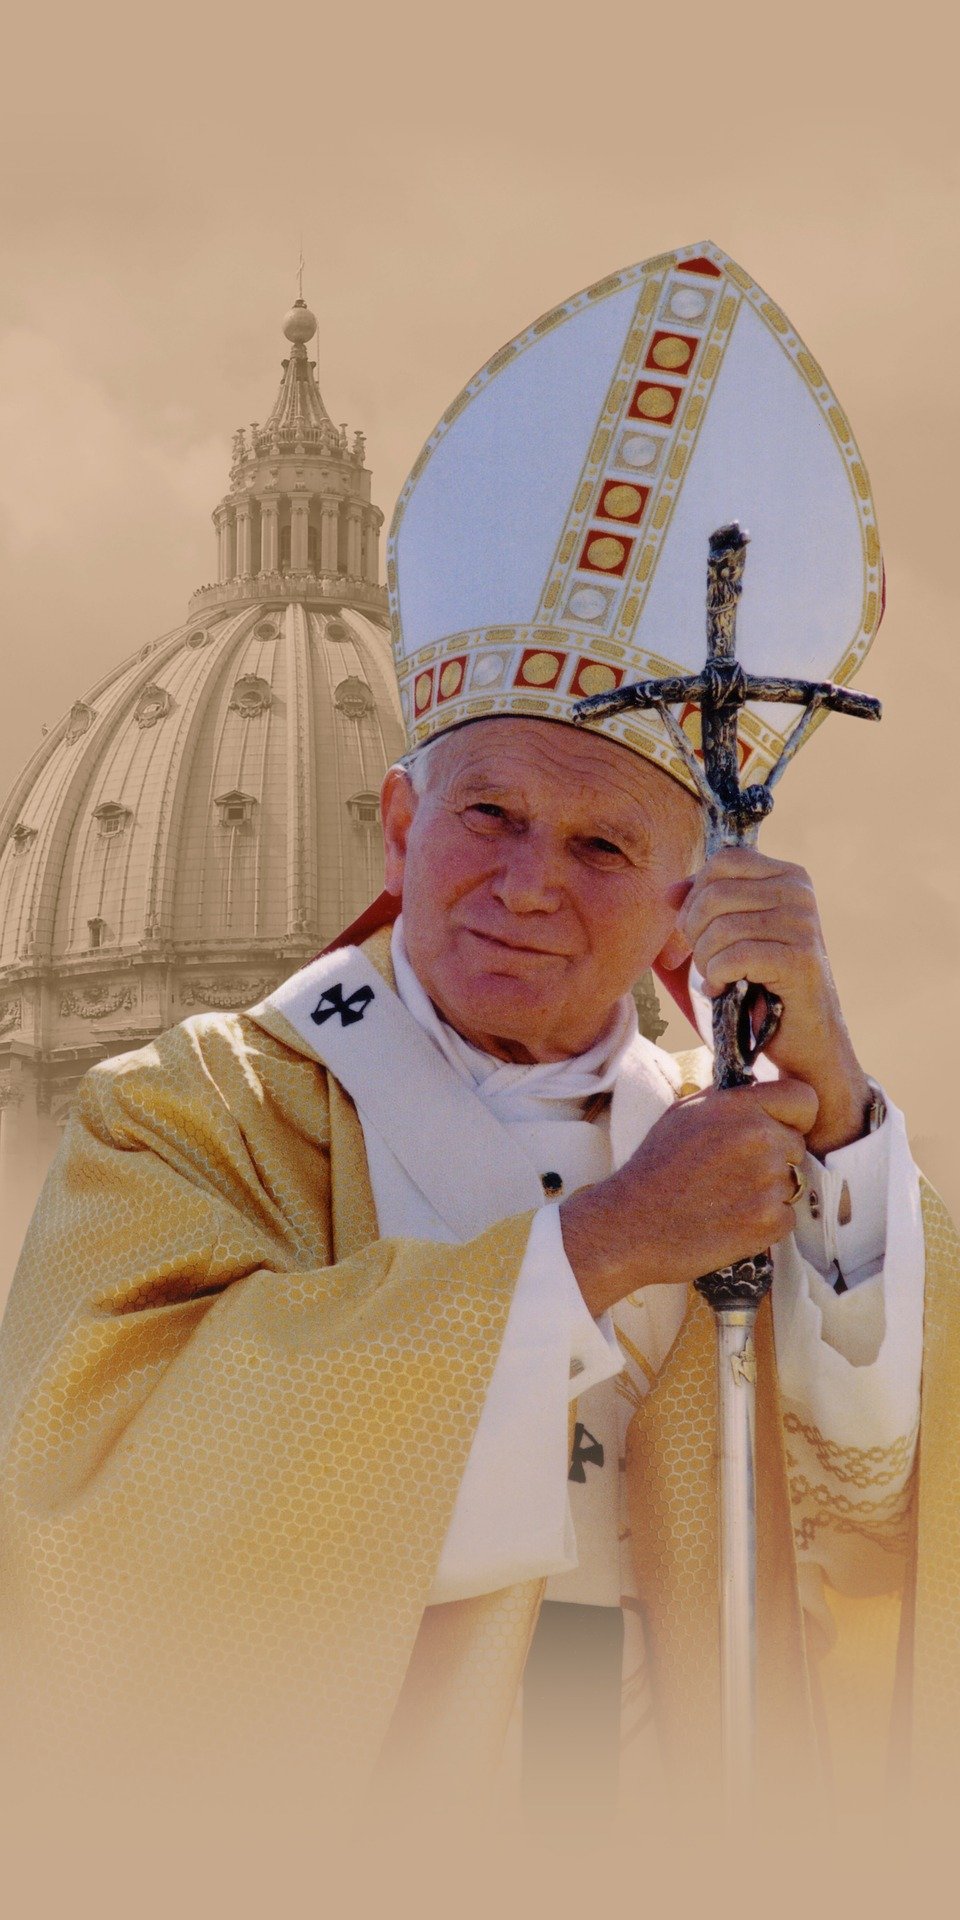 Grafika ilustrująca Jana Pawła II